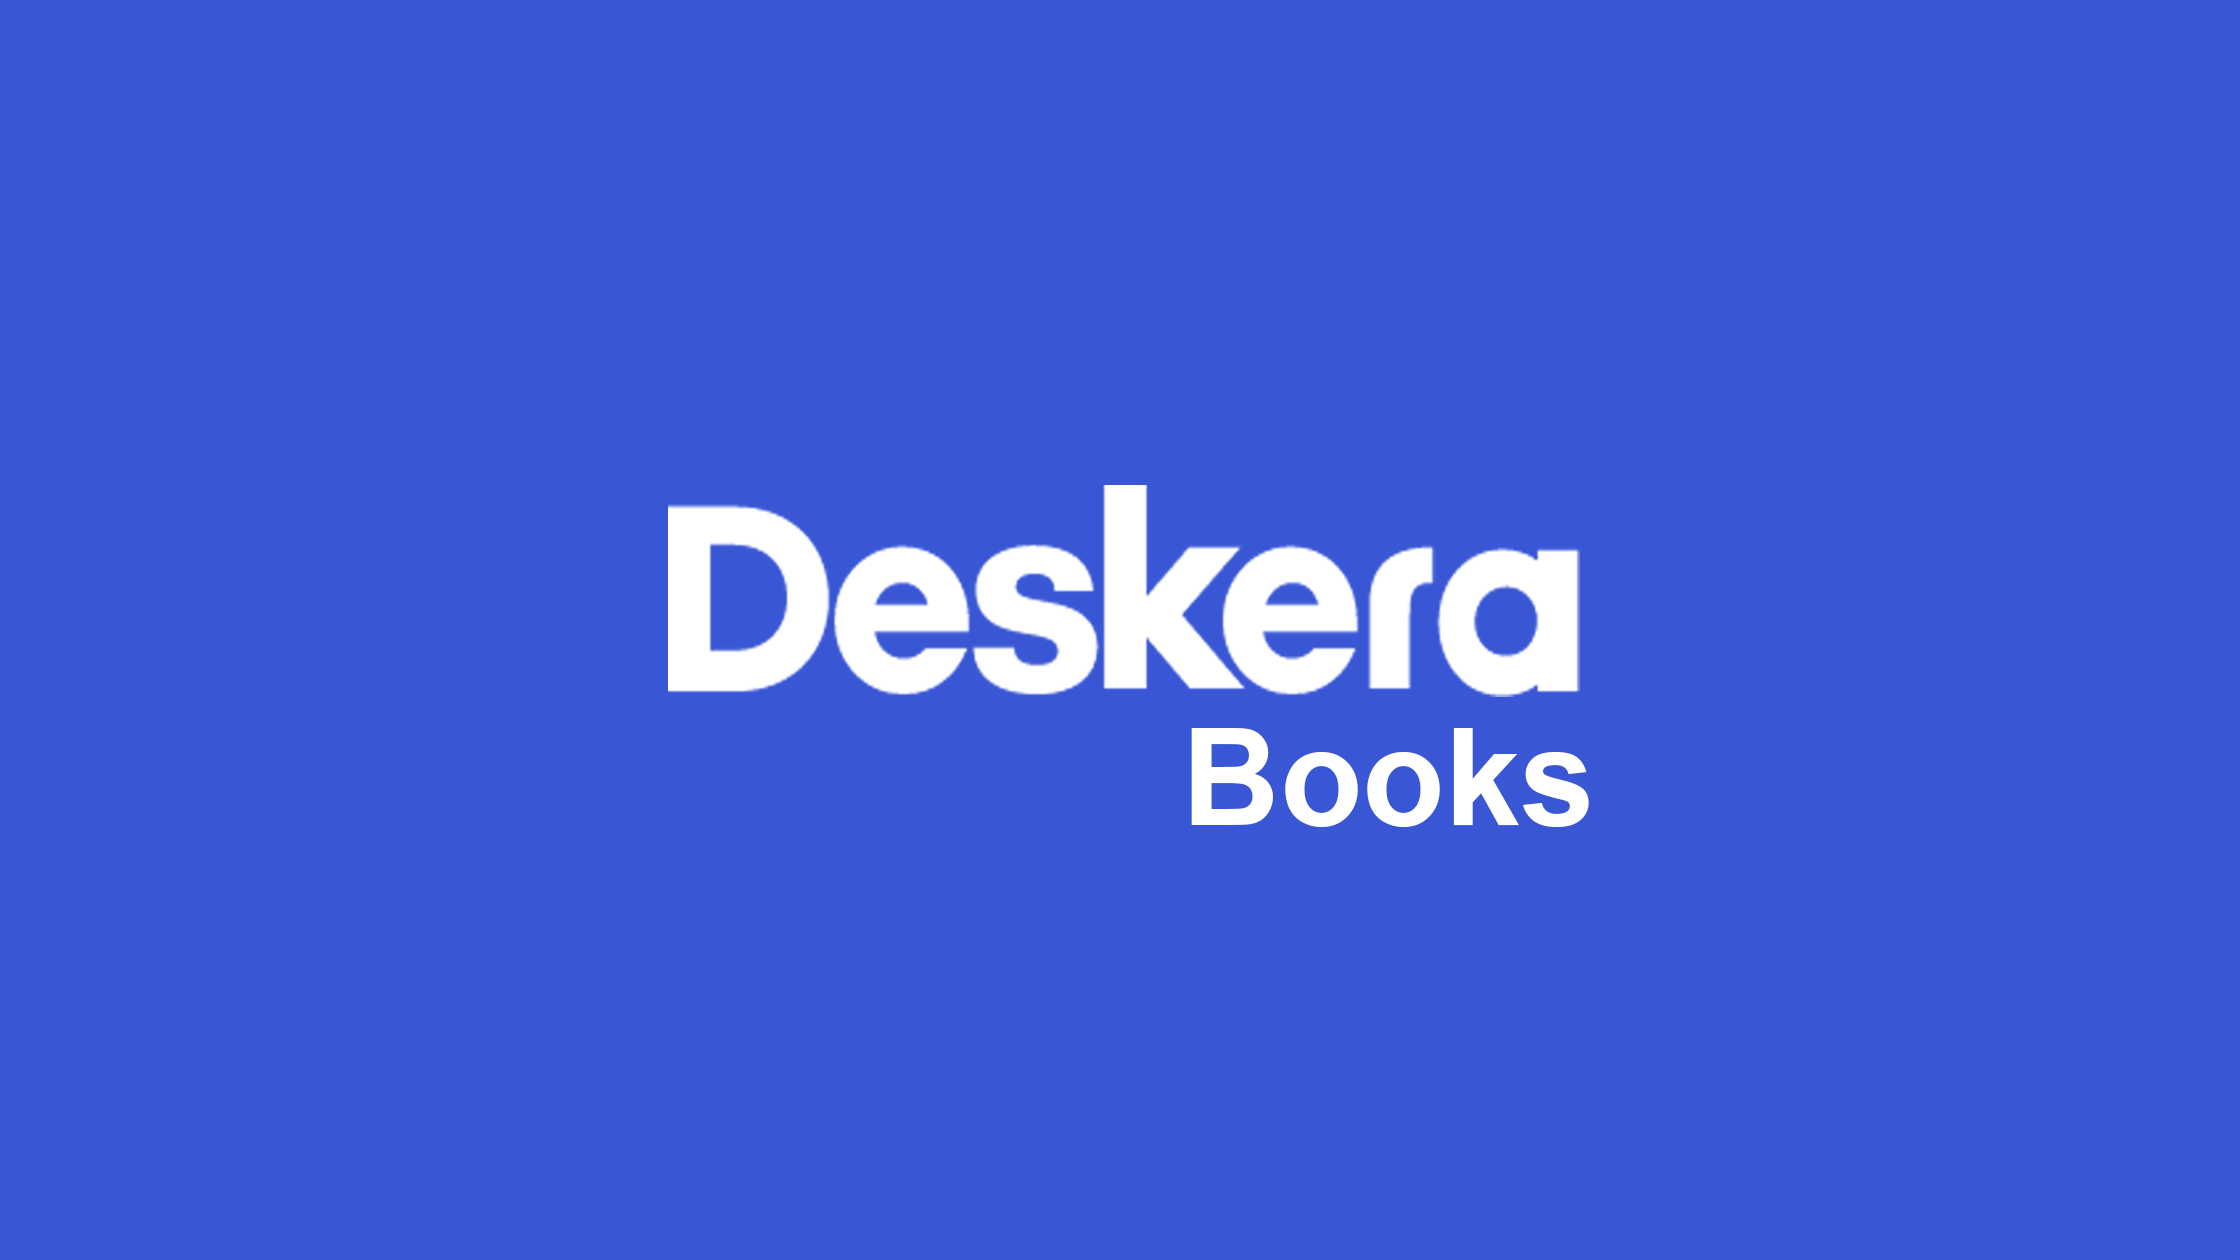 Deskera Books